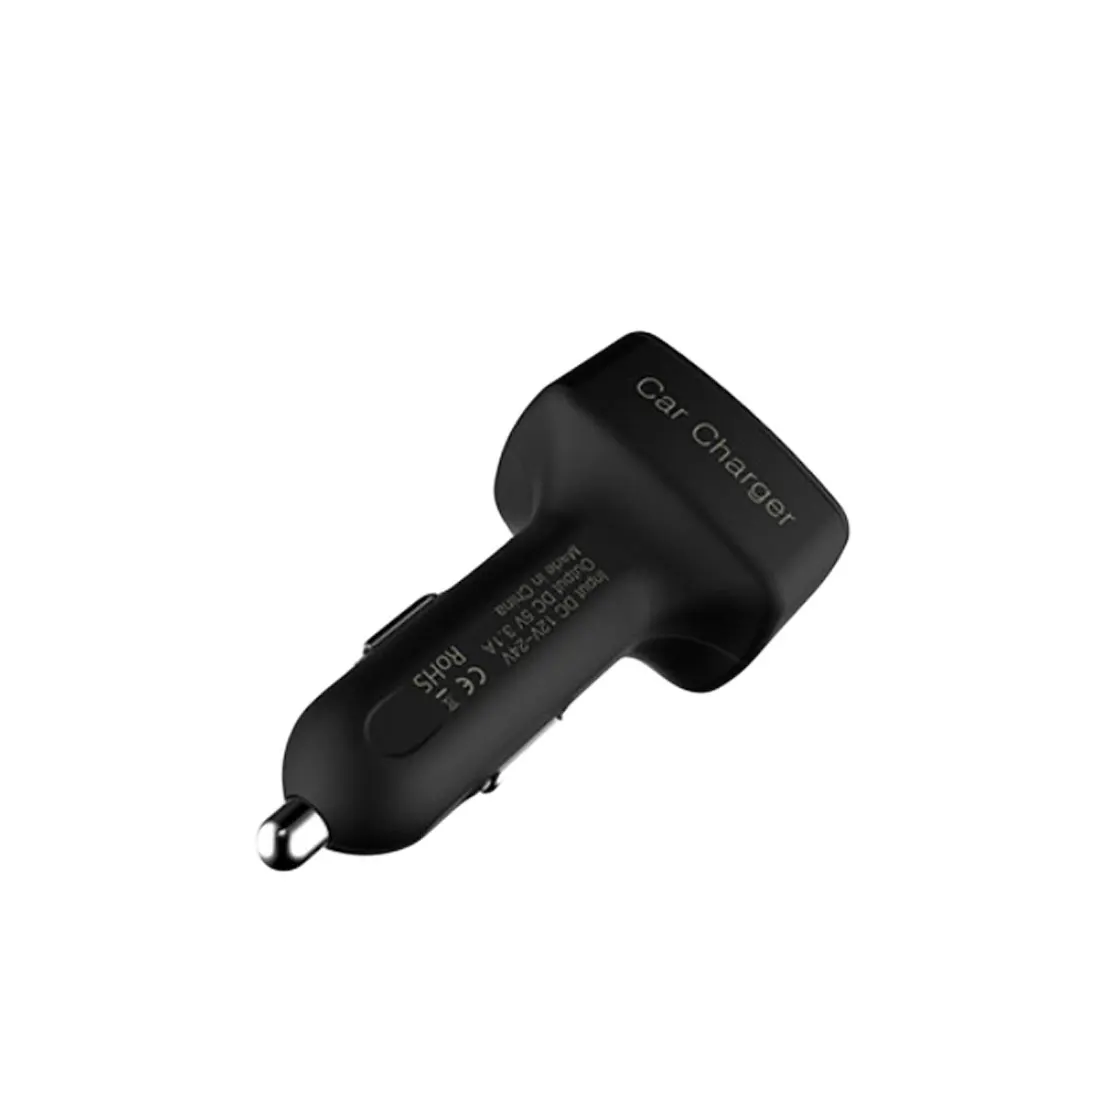 Dewtreetali 4 в 1 Автомобильное зарядное устройство двойной USB Вольтметр термометр цифровой дисплей зарядка прикуриватель автомобильный Стайлинг